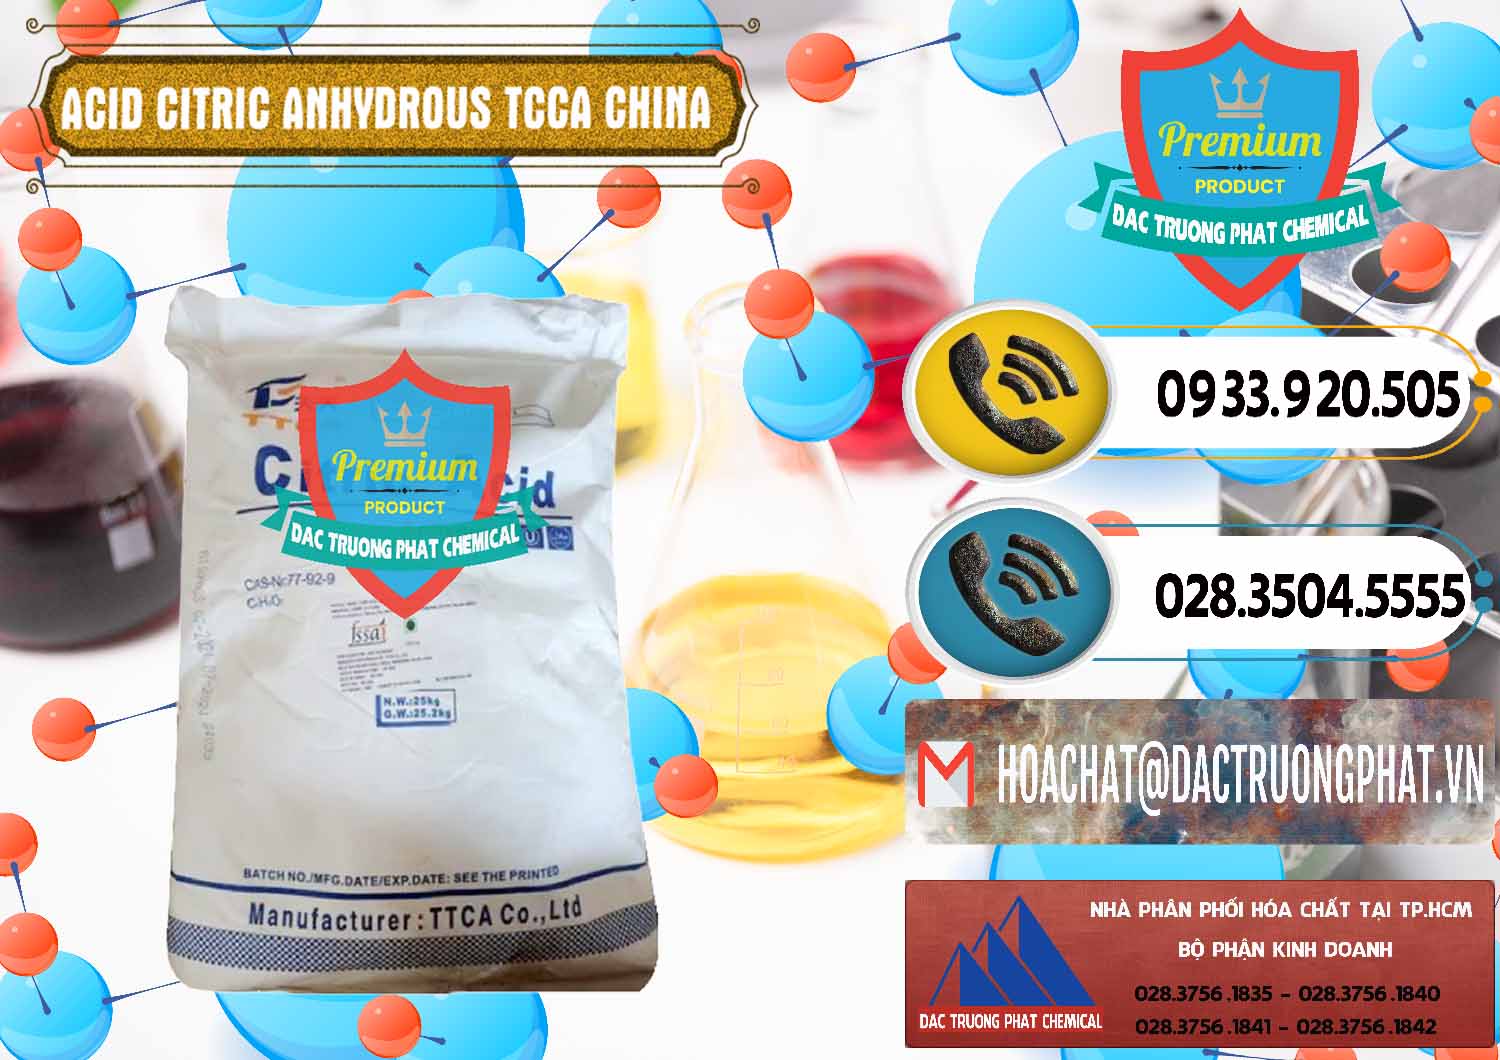 Nơi kinh doanh và bán Acid Citric - Axit Citric Anhydrous TCCA Trung Quốc China - 0442 - Đơn vị kinh doanh và phân phối hóa chất tại TP.HCM - hoachatdetnhuom.vn